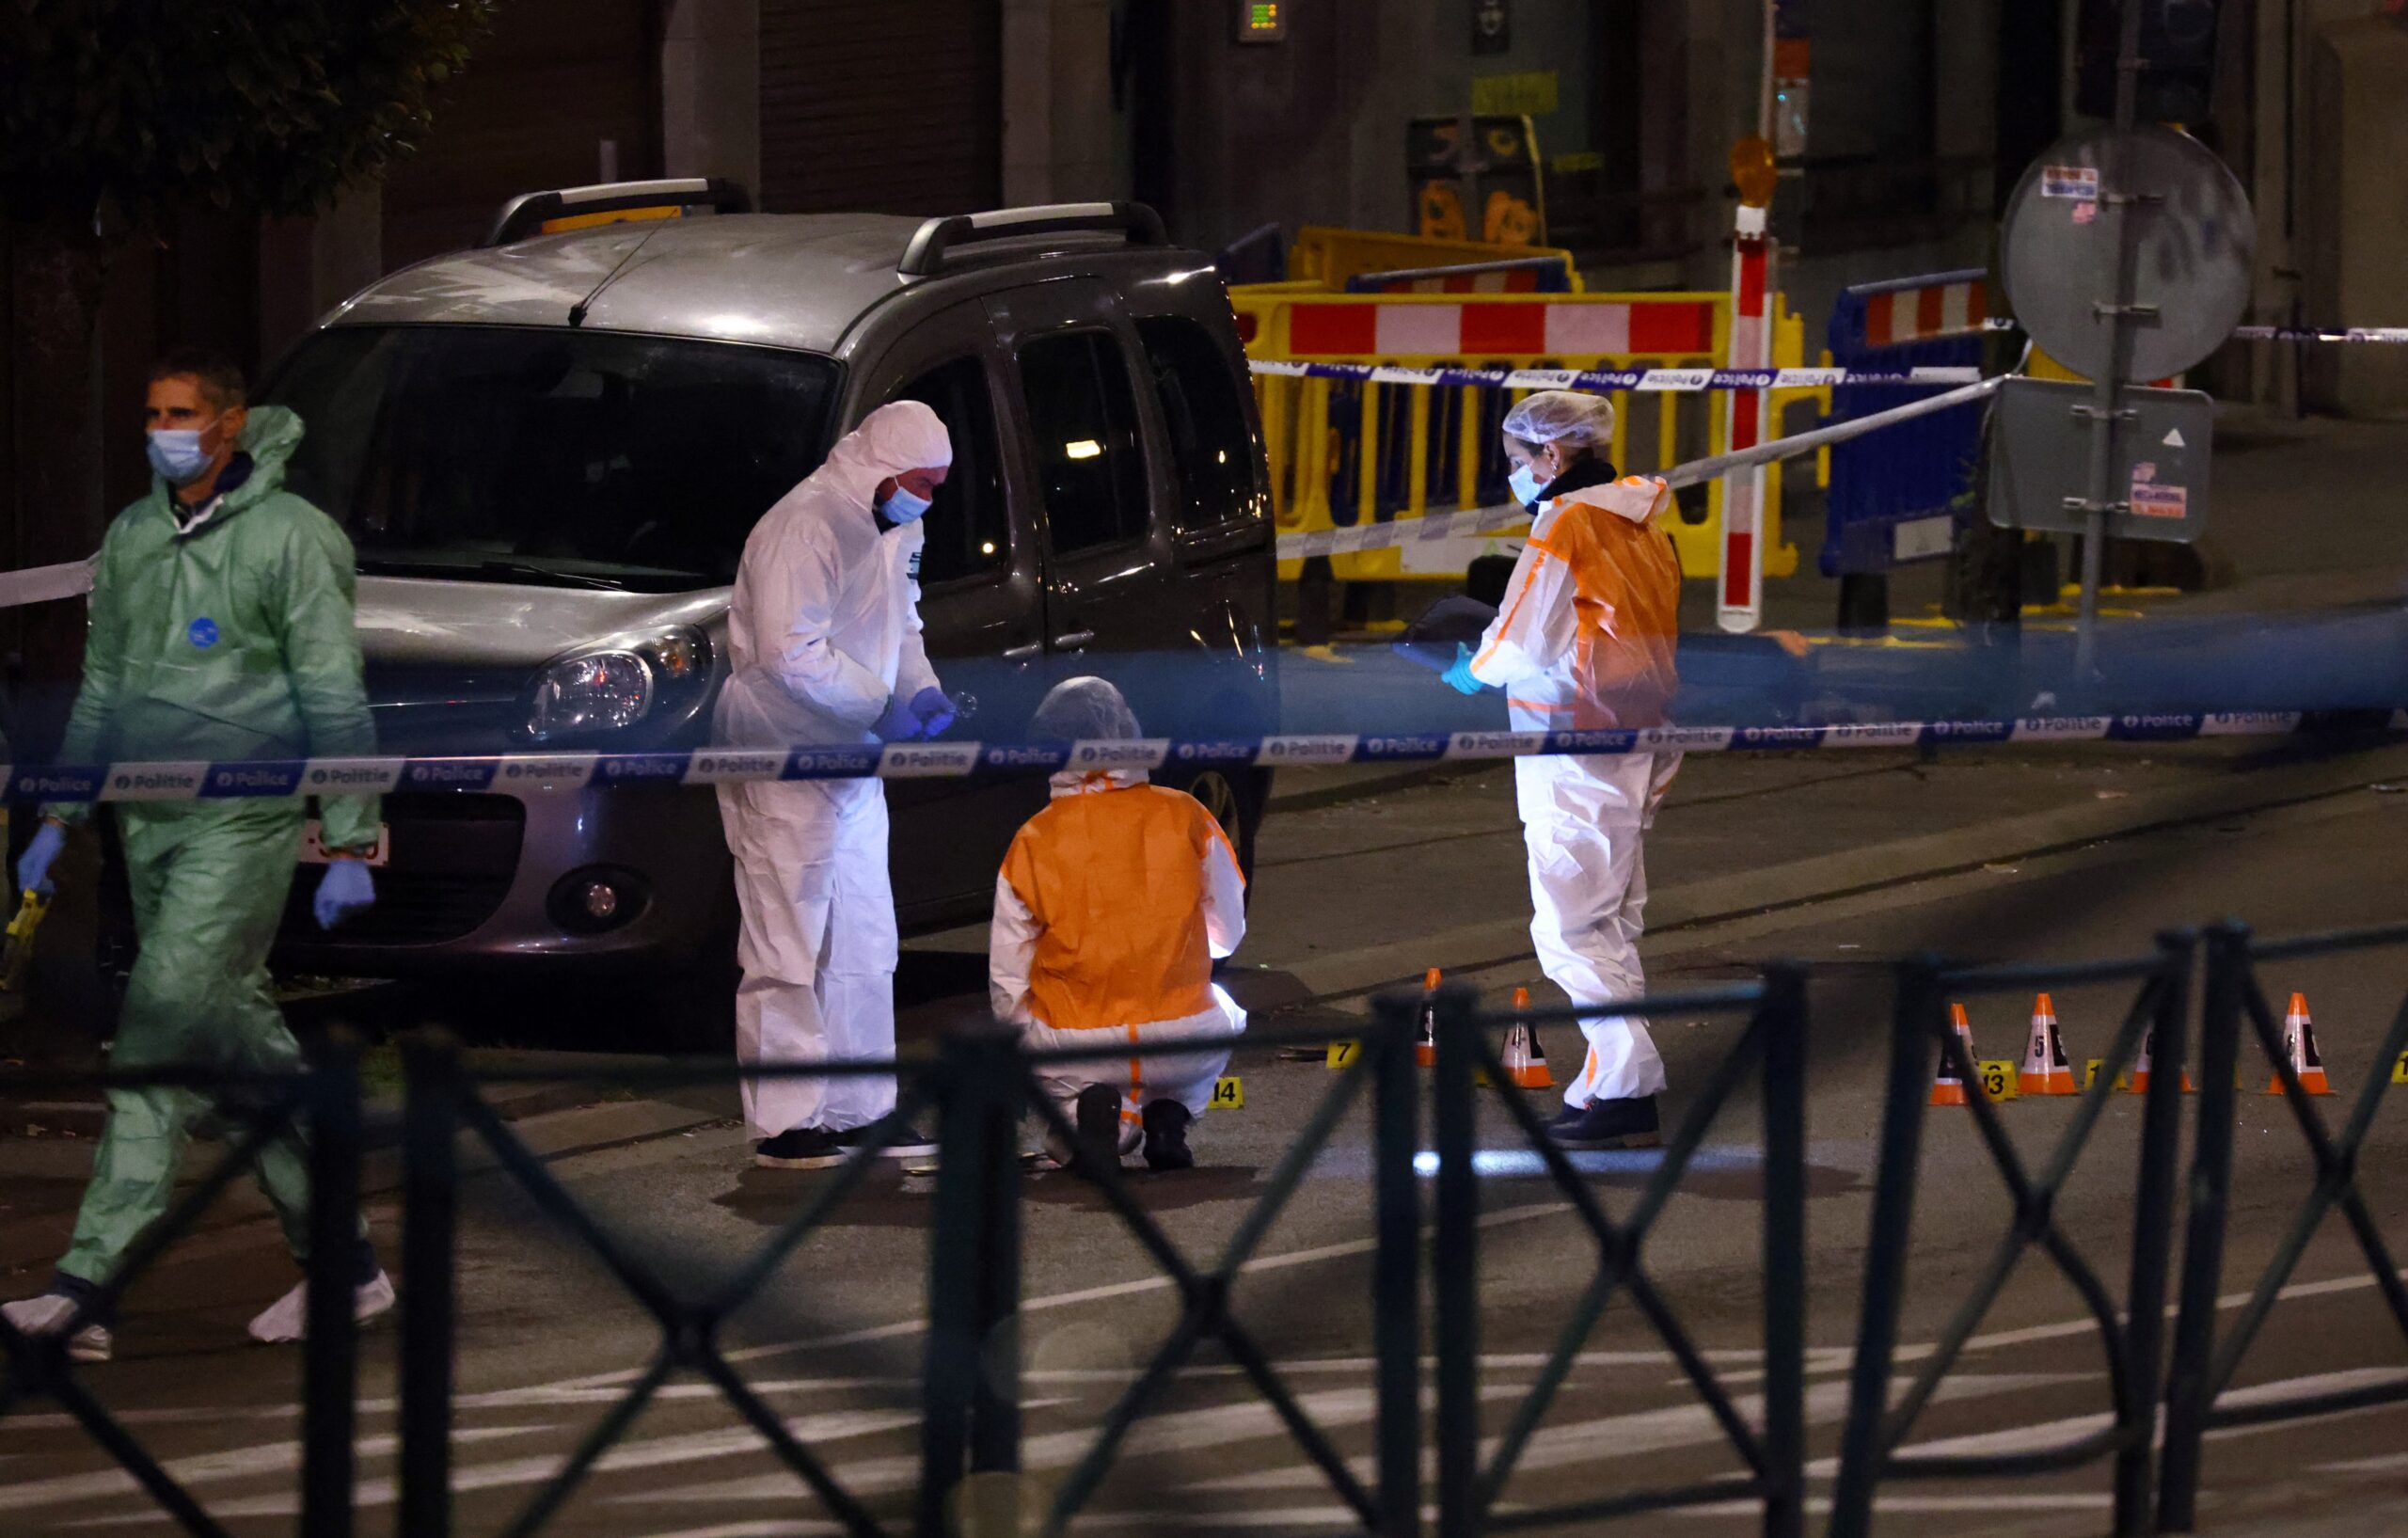 Βρυξέλλες: Σε κόκκινο συναγερμό για μέλος του ISIS που σκότωσε δύο Σουηδούς – Ανθρωποκυνηγητό για τη σύλληψή του